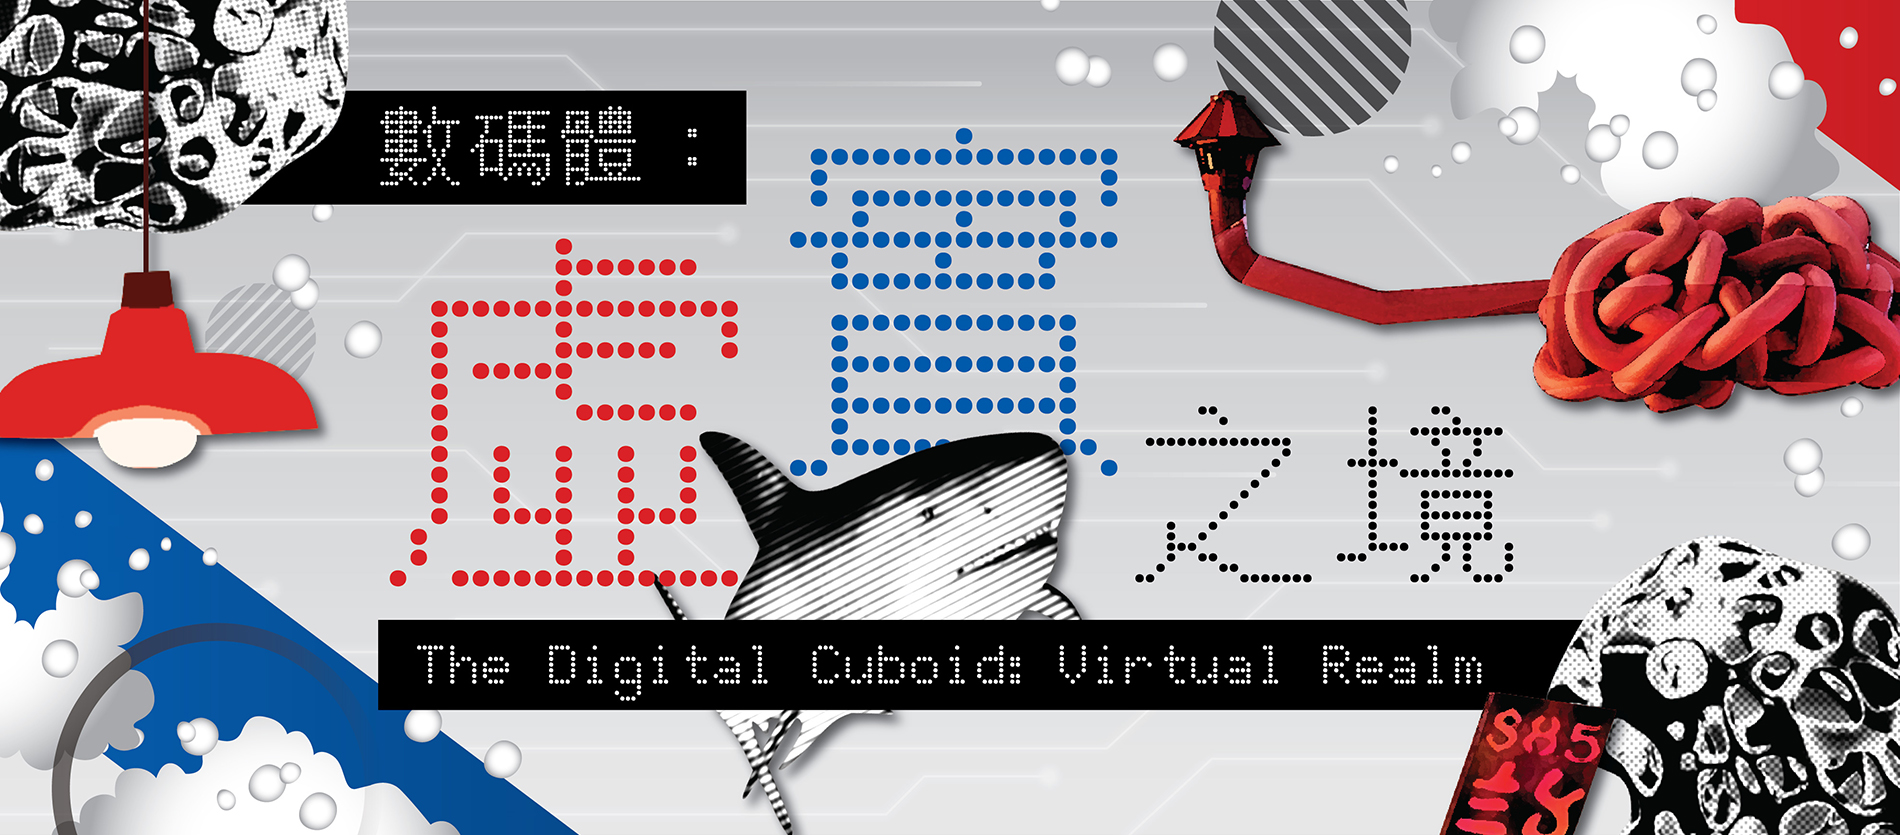 The Digital Cuboid: Virtual Realm